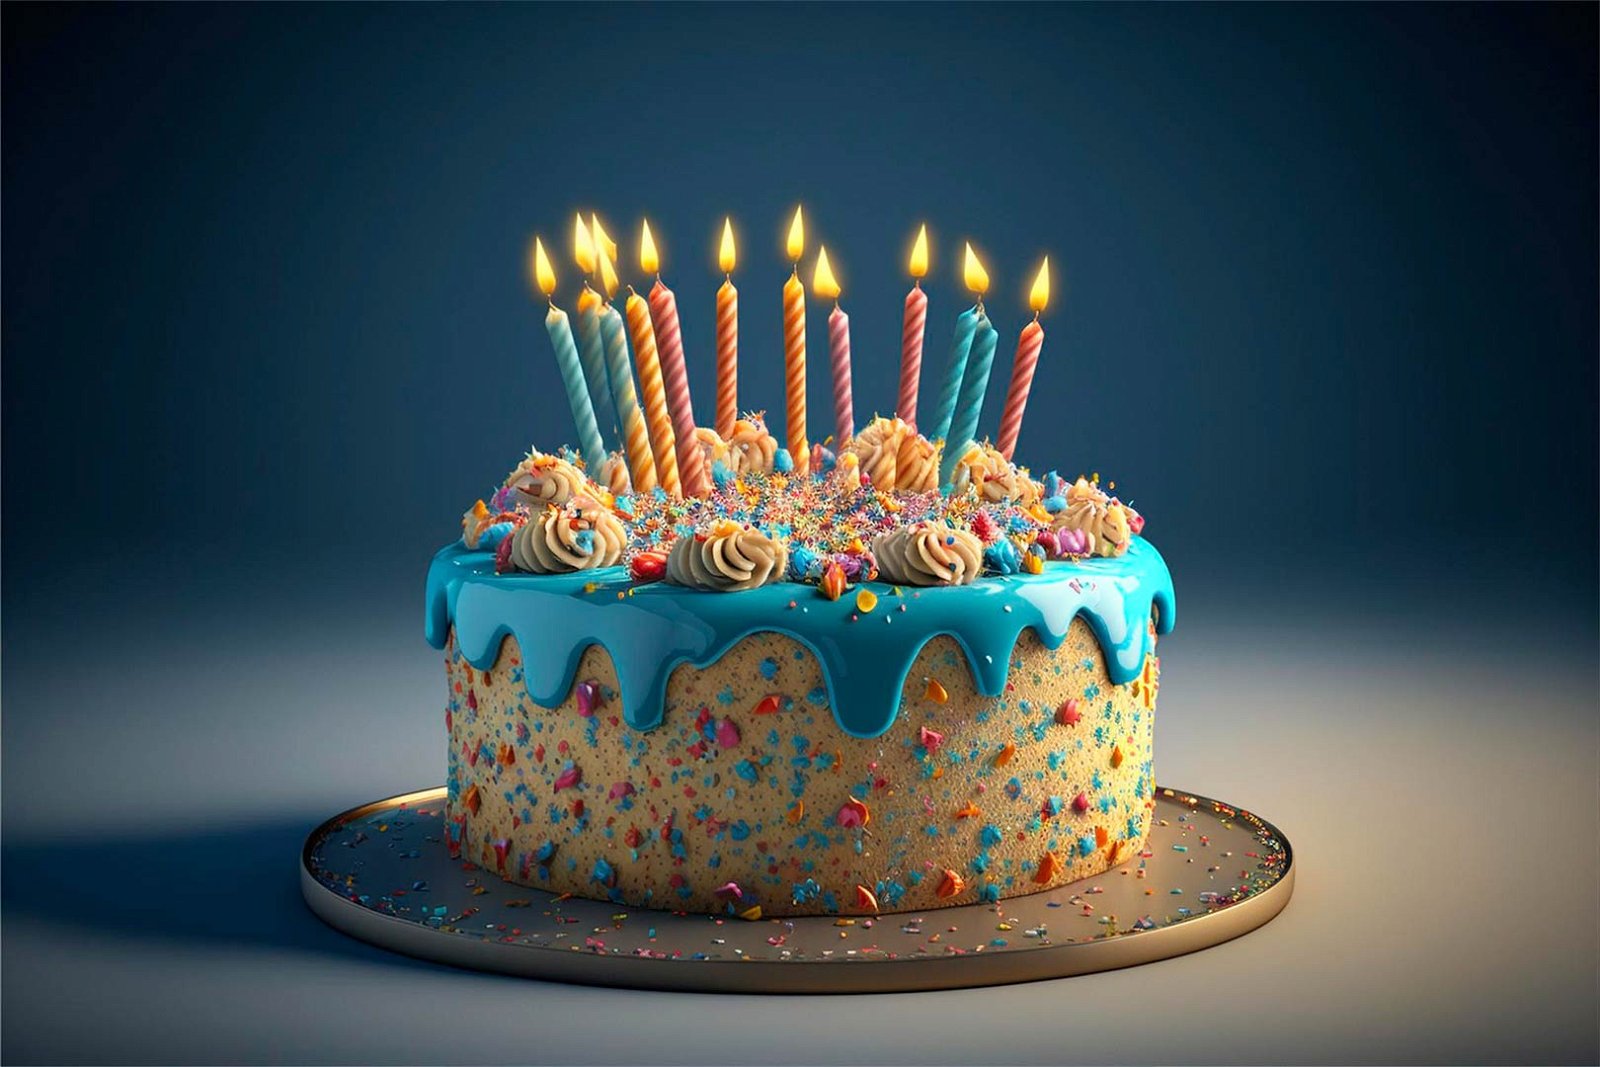 Il primo compleanno: organizzazione, regali, torta 